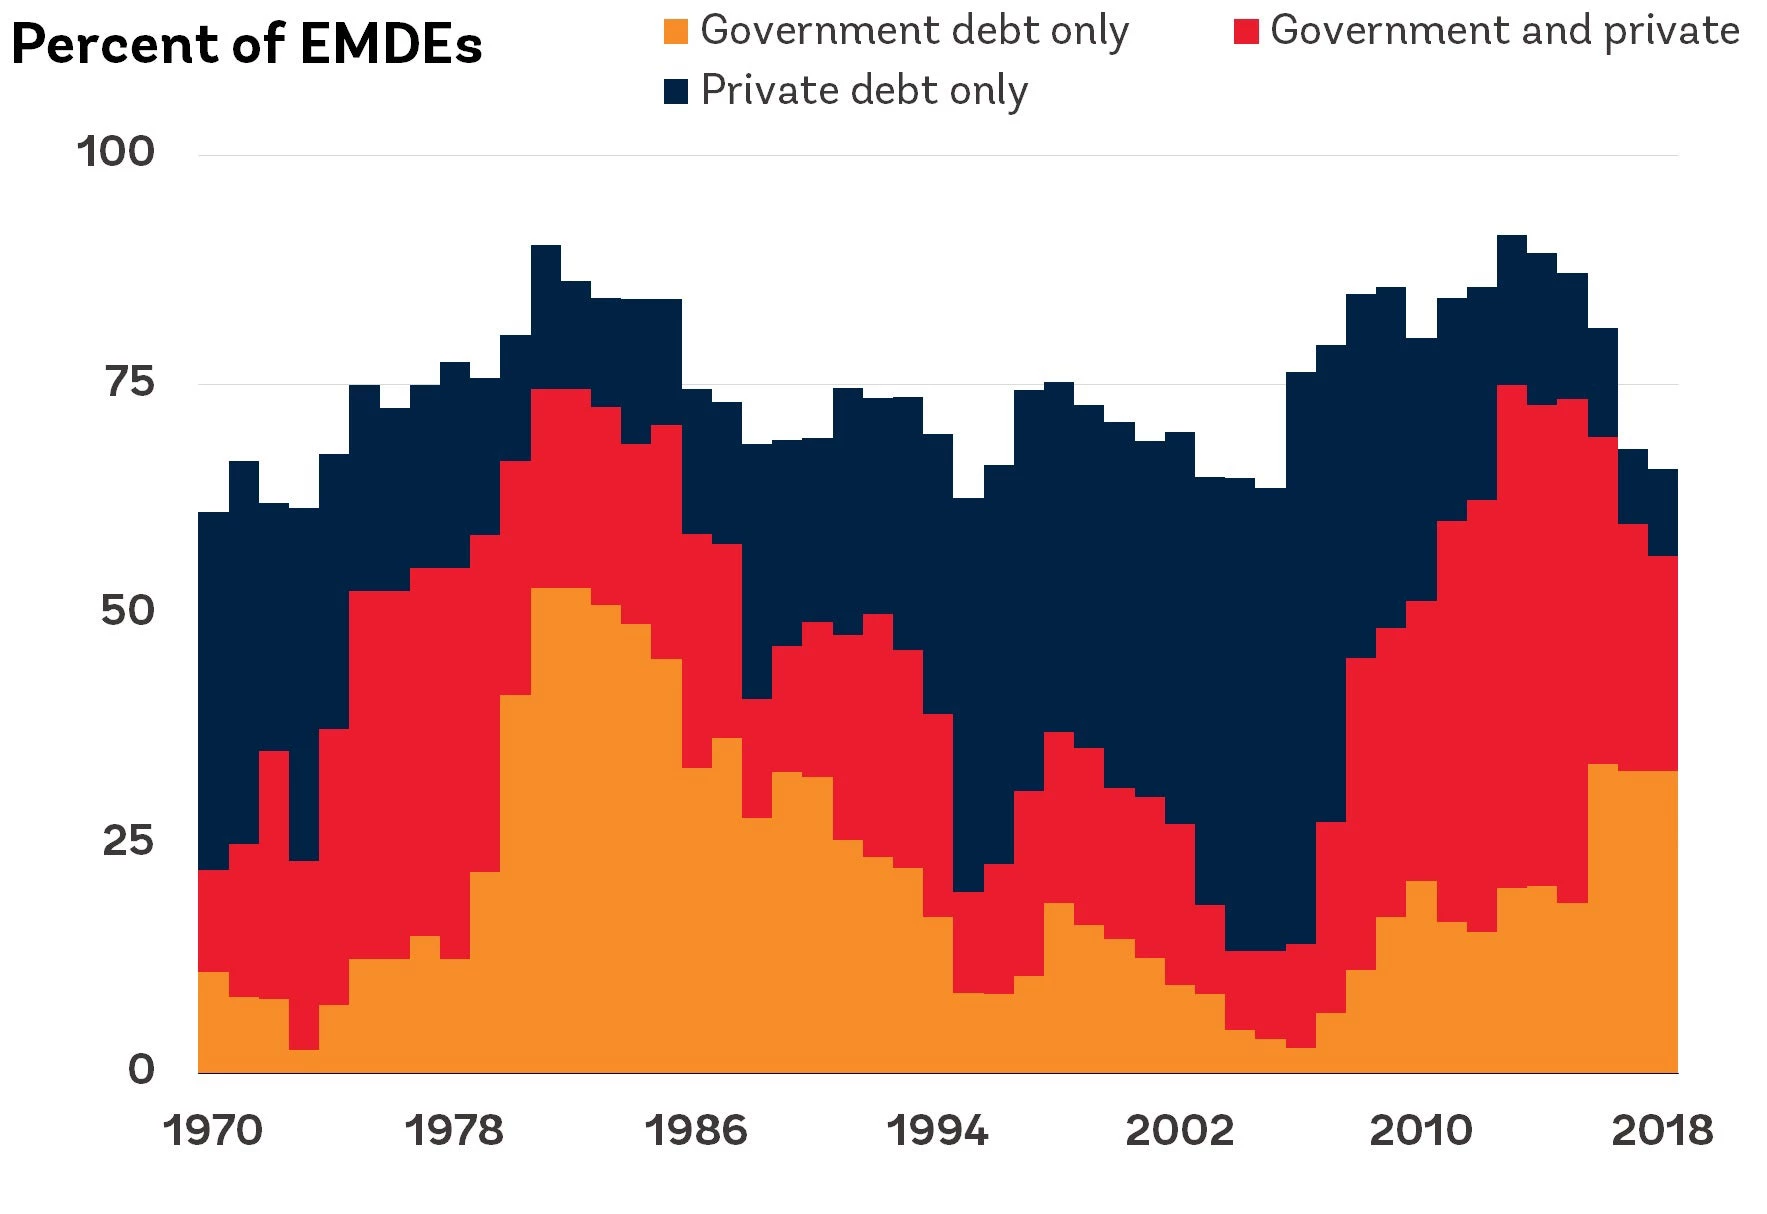 EMDEs in rapid debt accumulation episodes